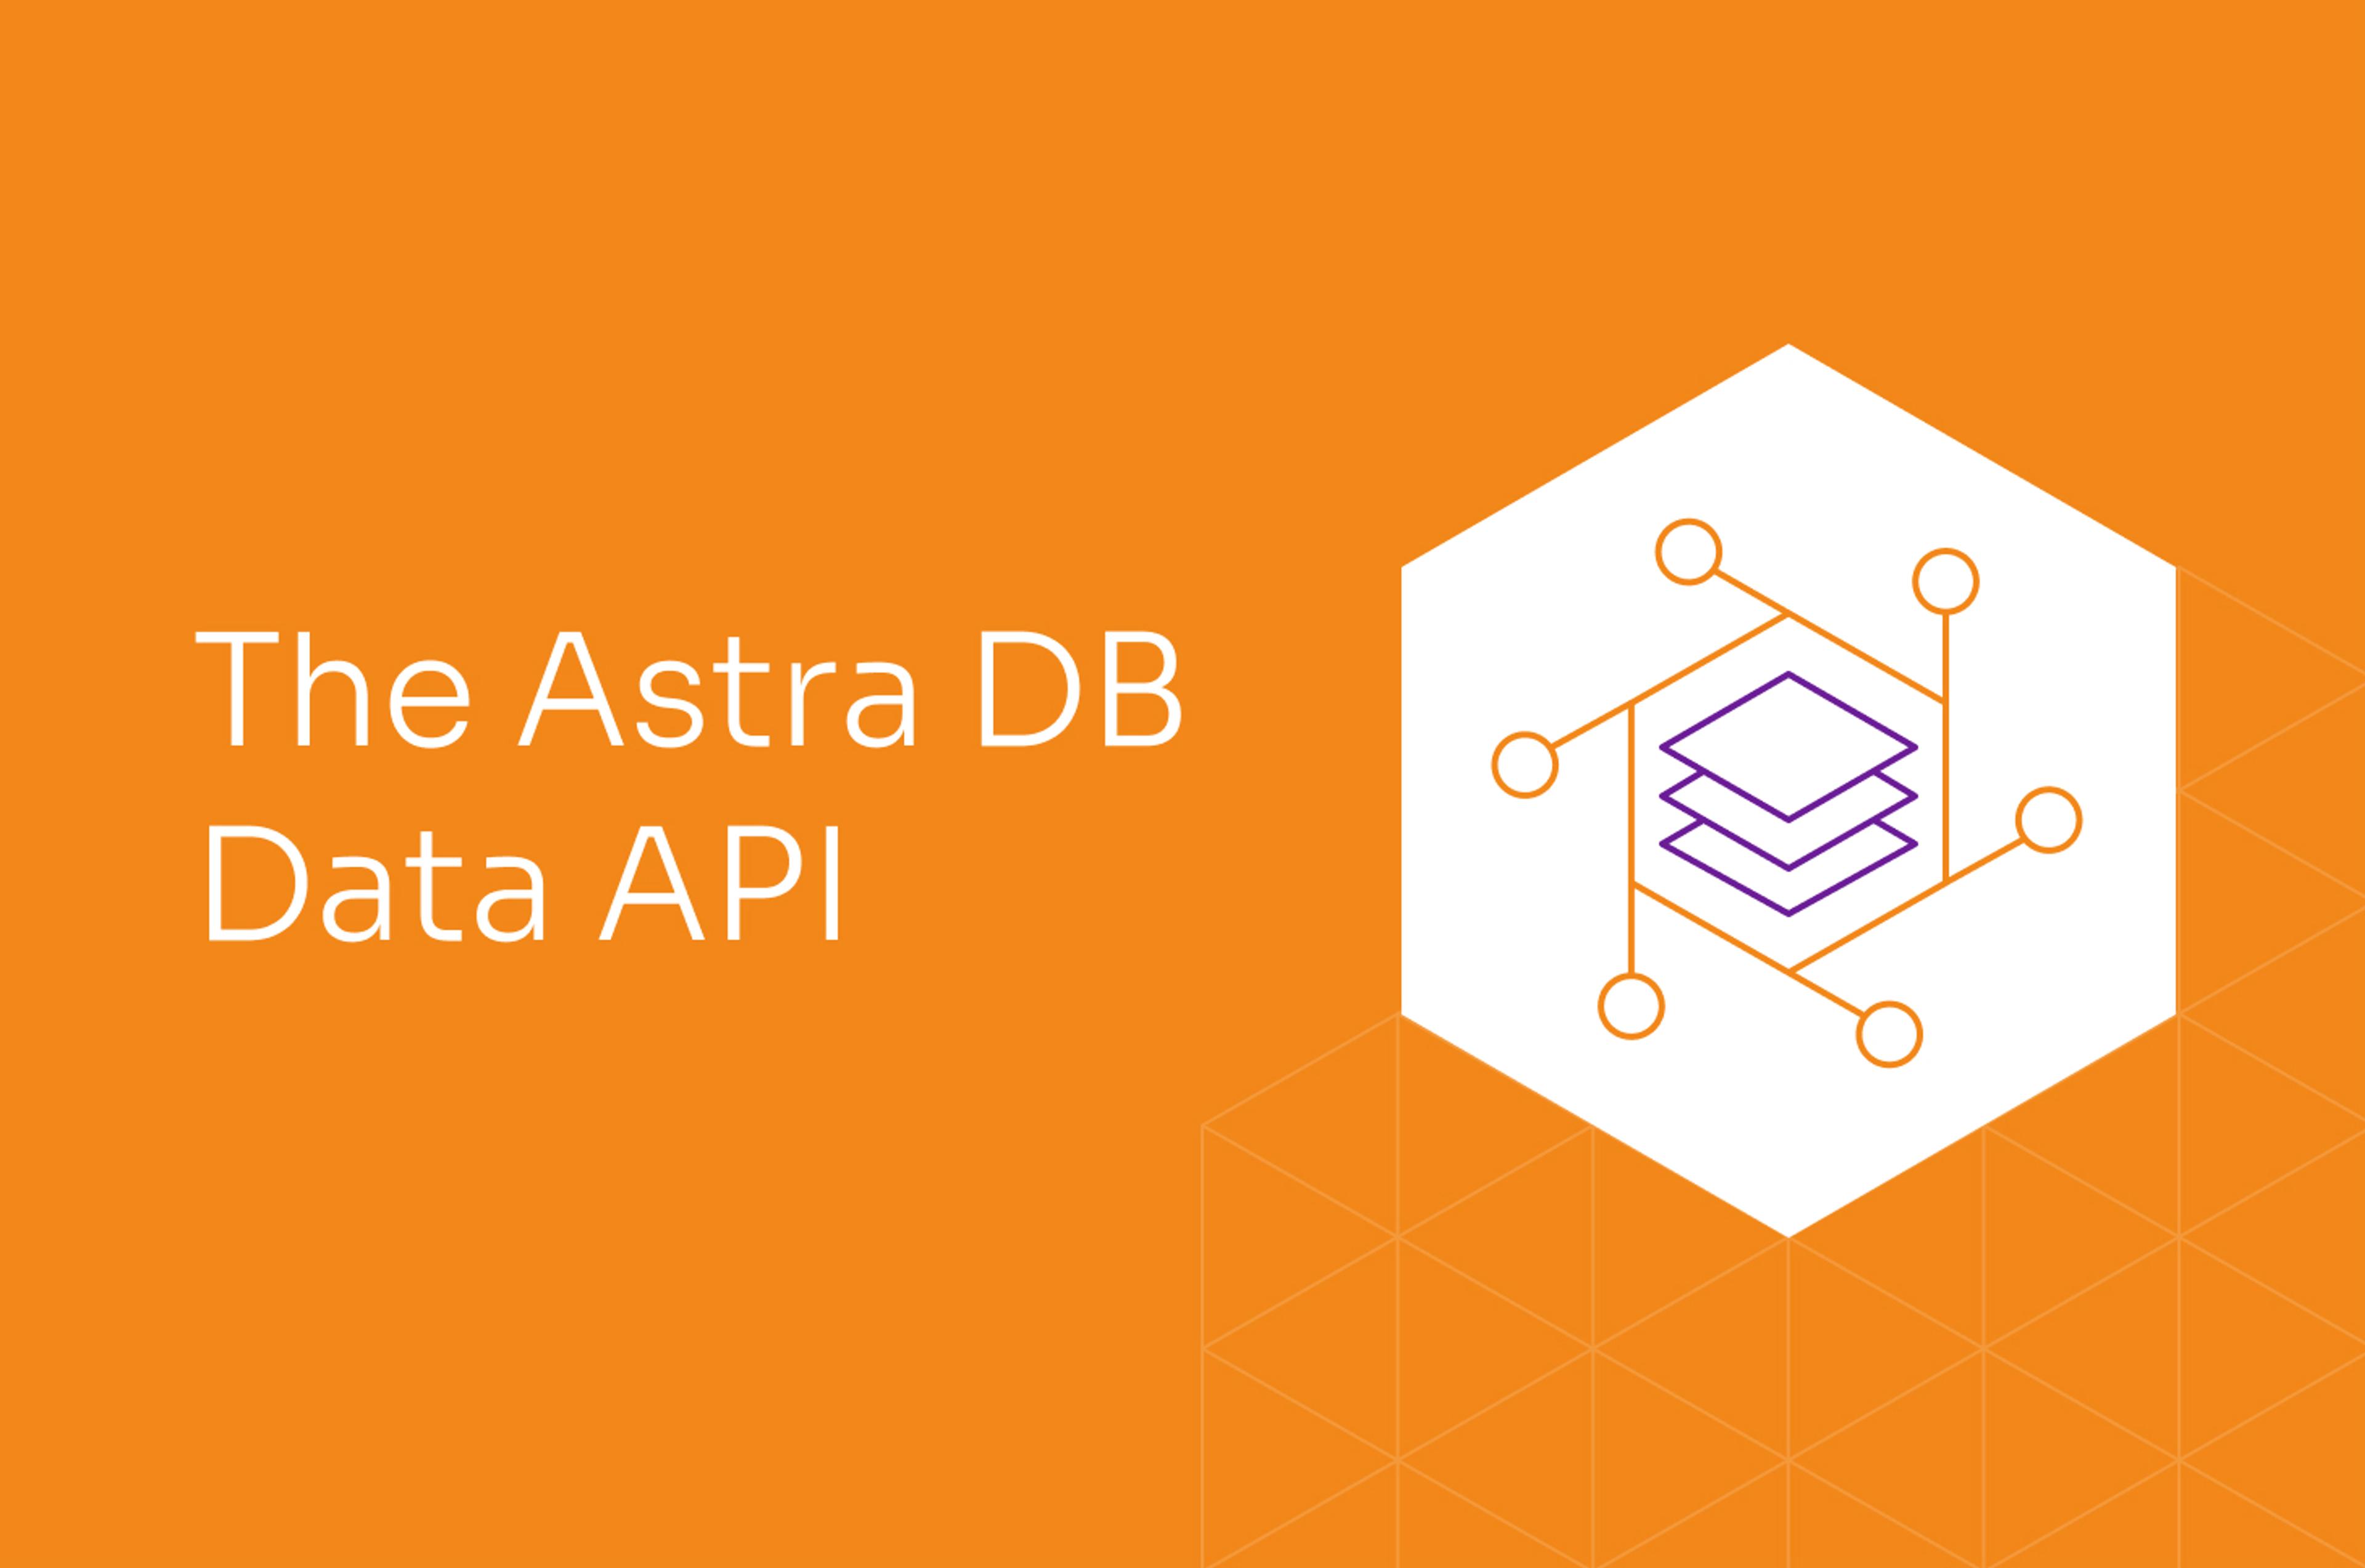 Making Astra DB easier for MongoDB developers